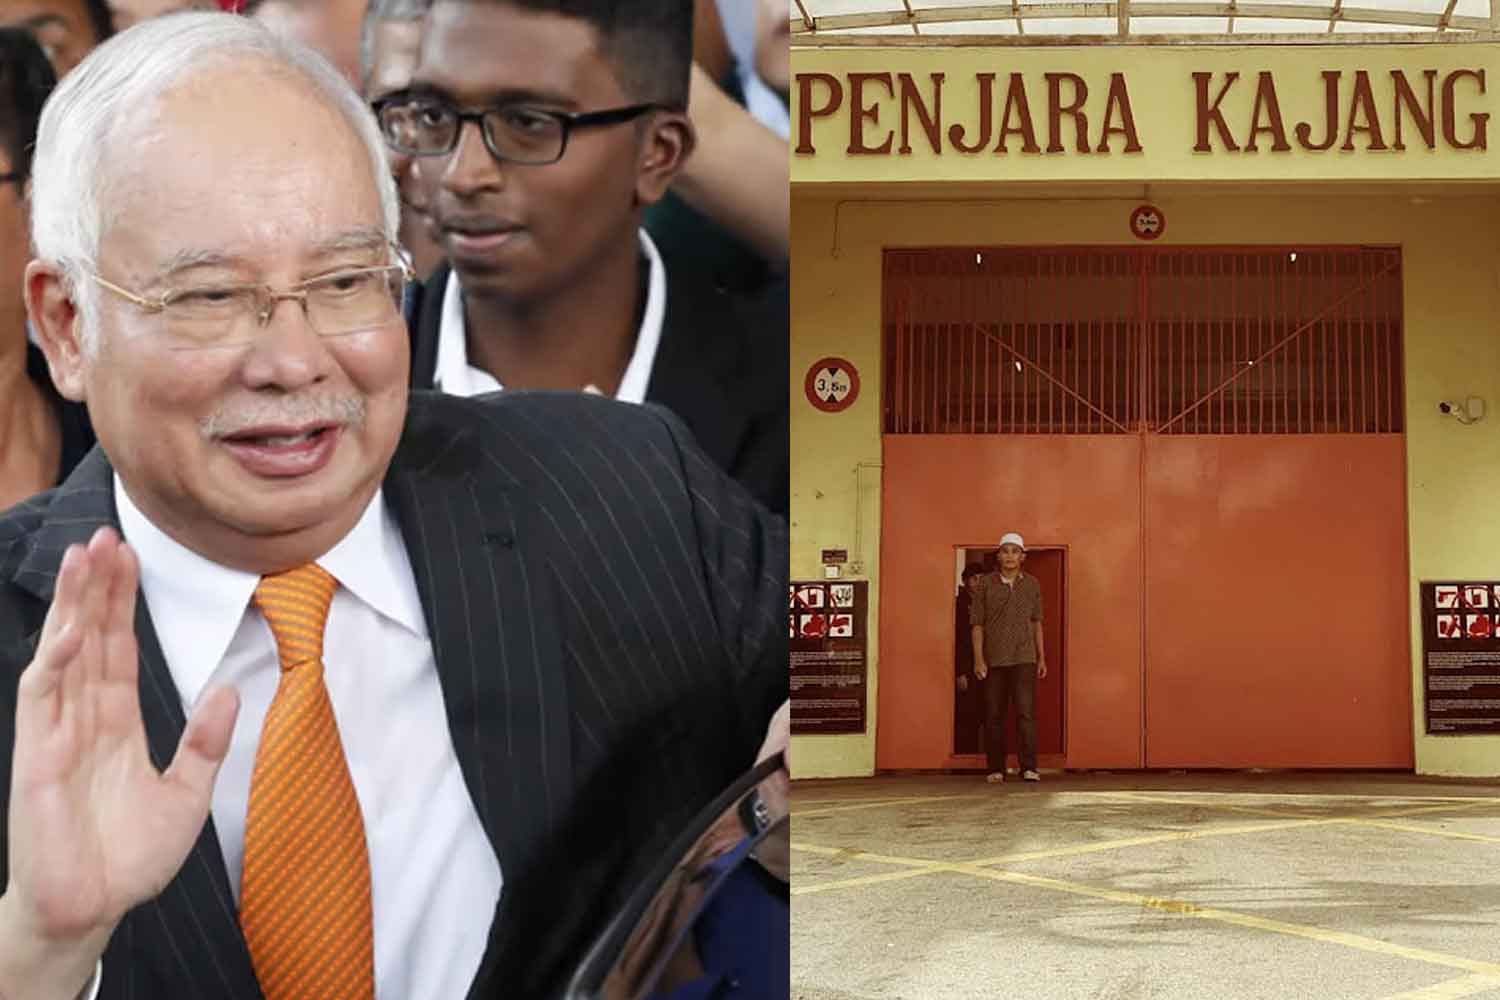 Pihak penjara sahkan Najib kini berada di HRC, bukan penjara Kajang